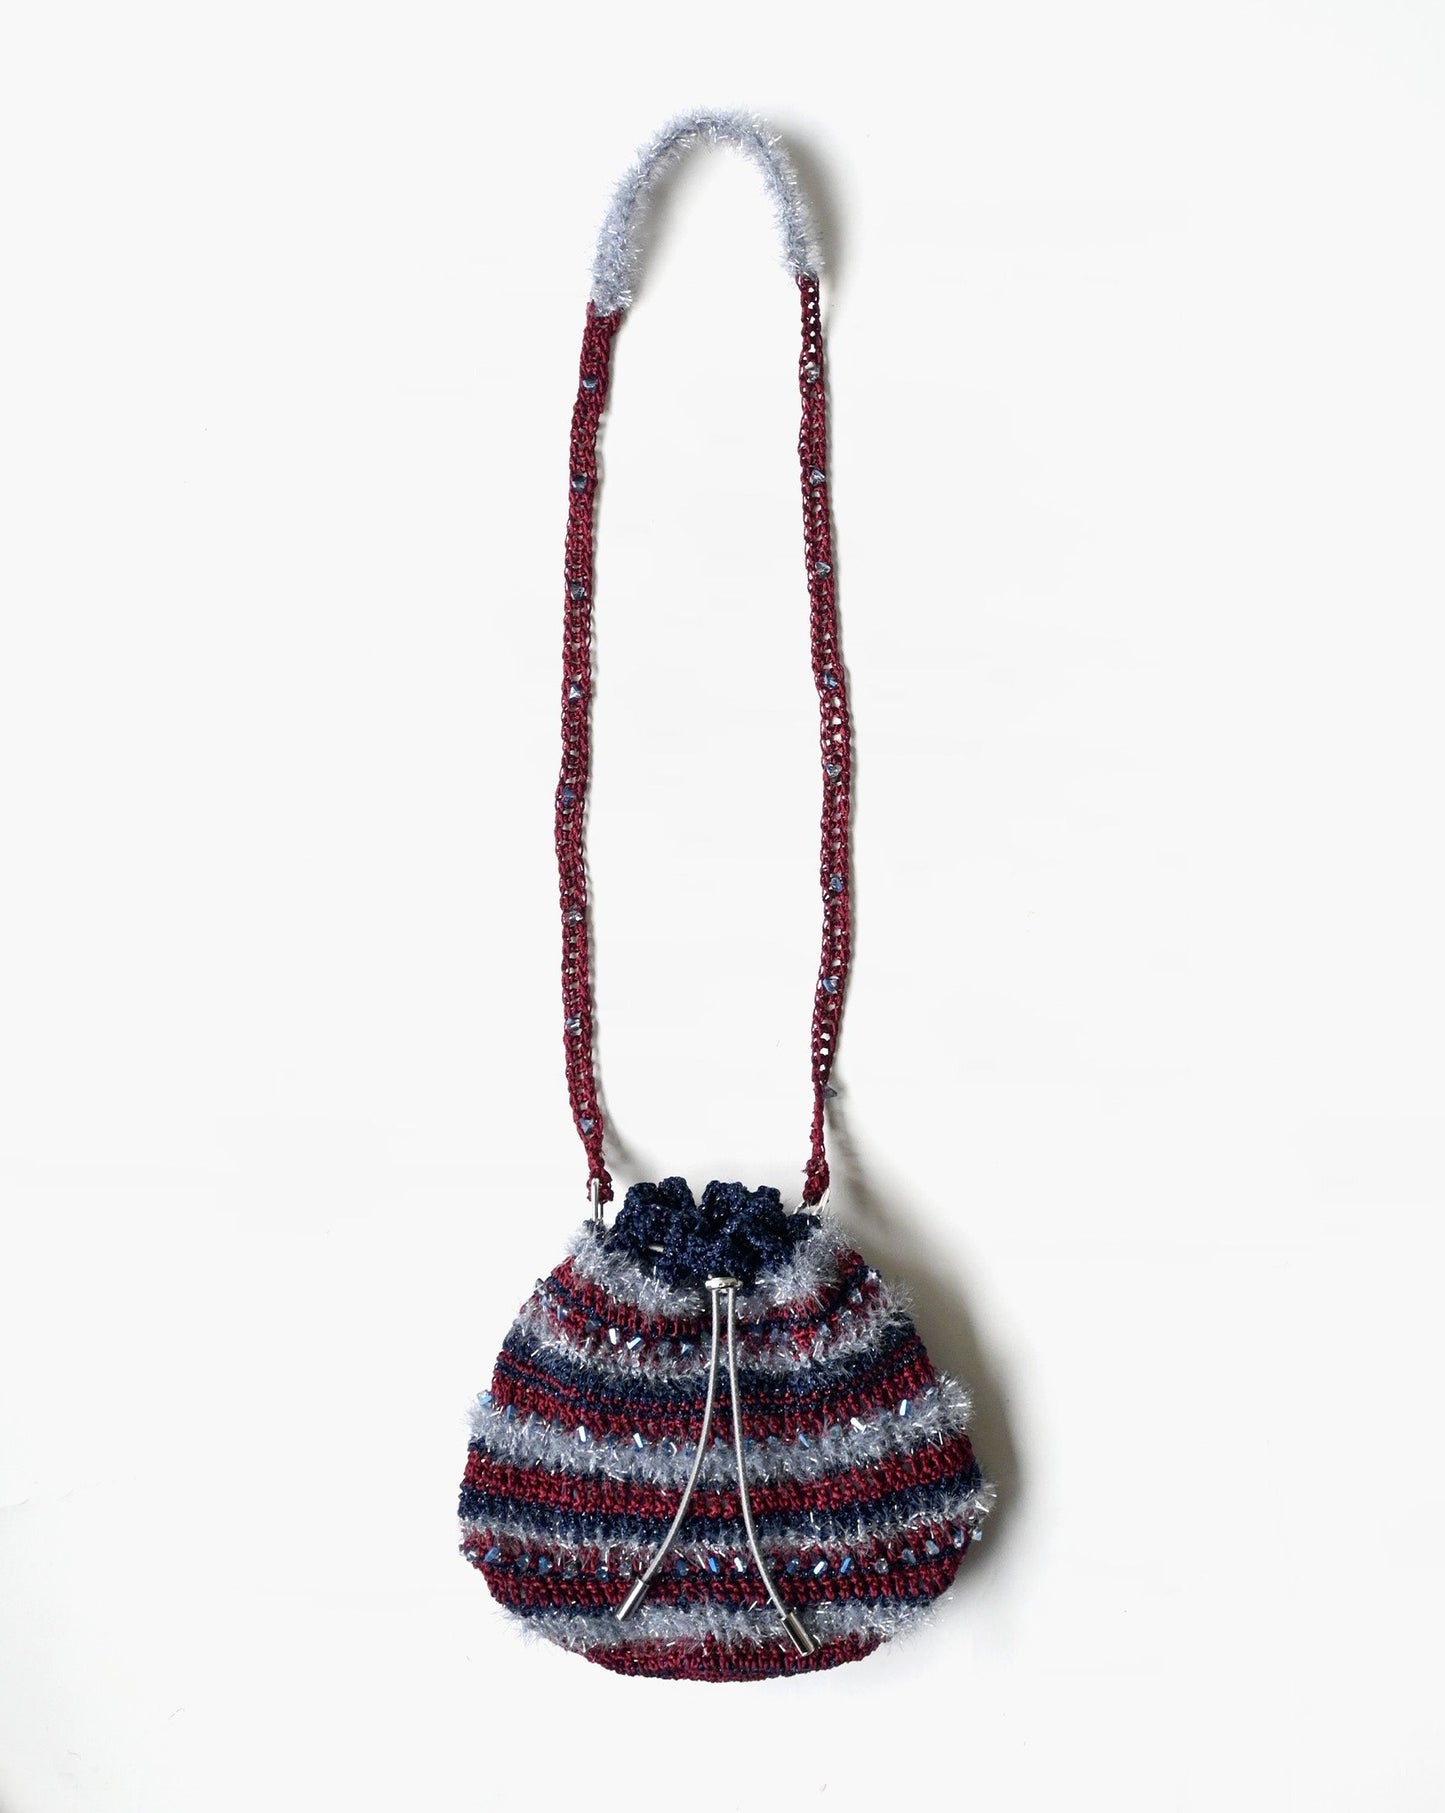 Hand Knitting Bag 09